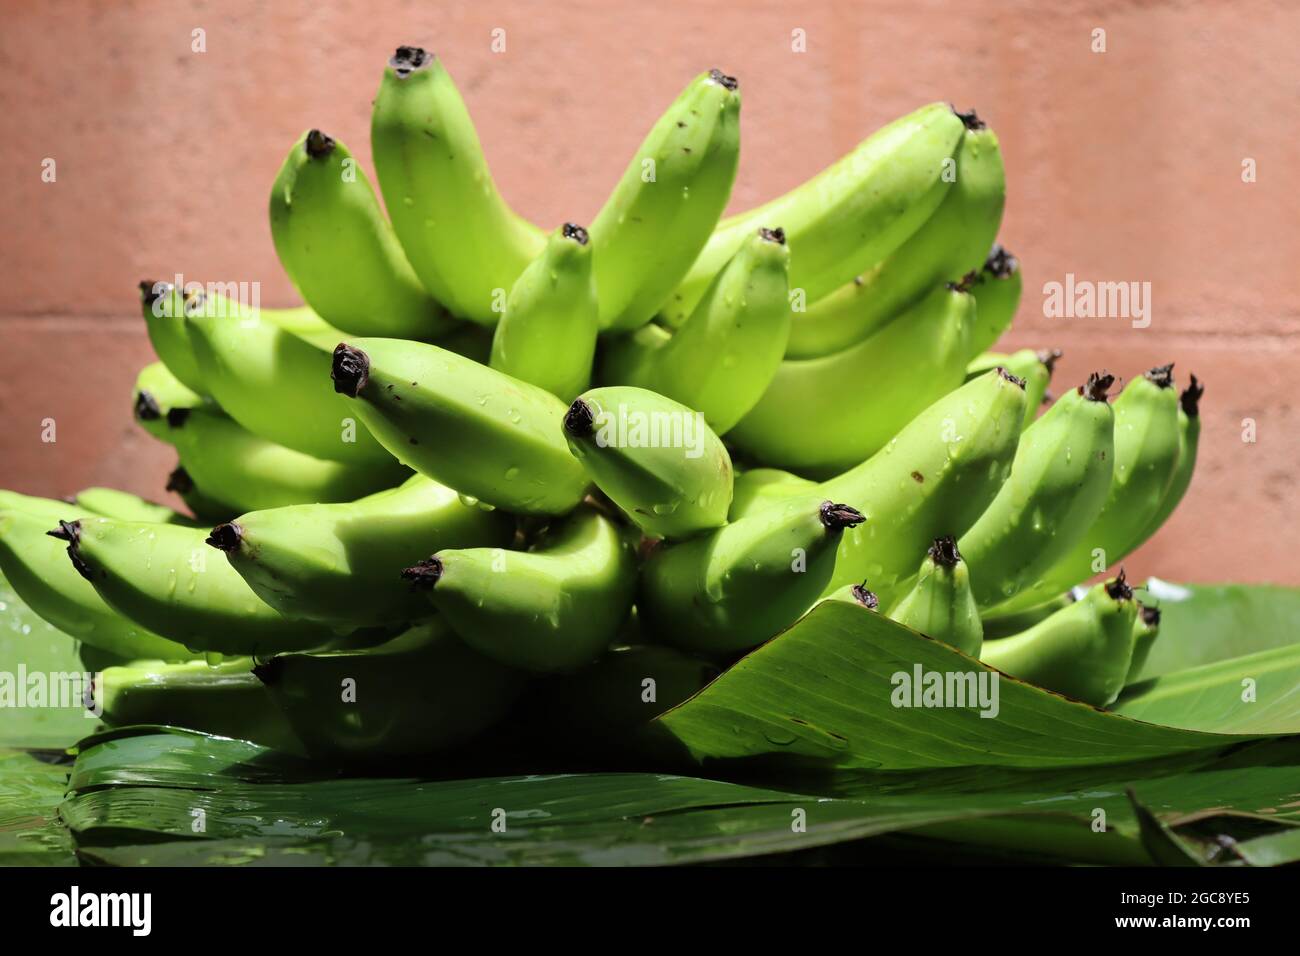 Home coltivare banana dallo Sri Lanka, frutta molto popolare da coltivare in giardini di casa ogni dove nell'isola, così frutta molto gustosa. Foto Stock